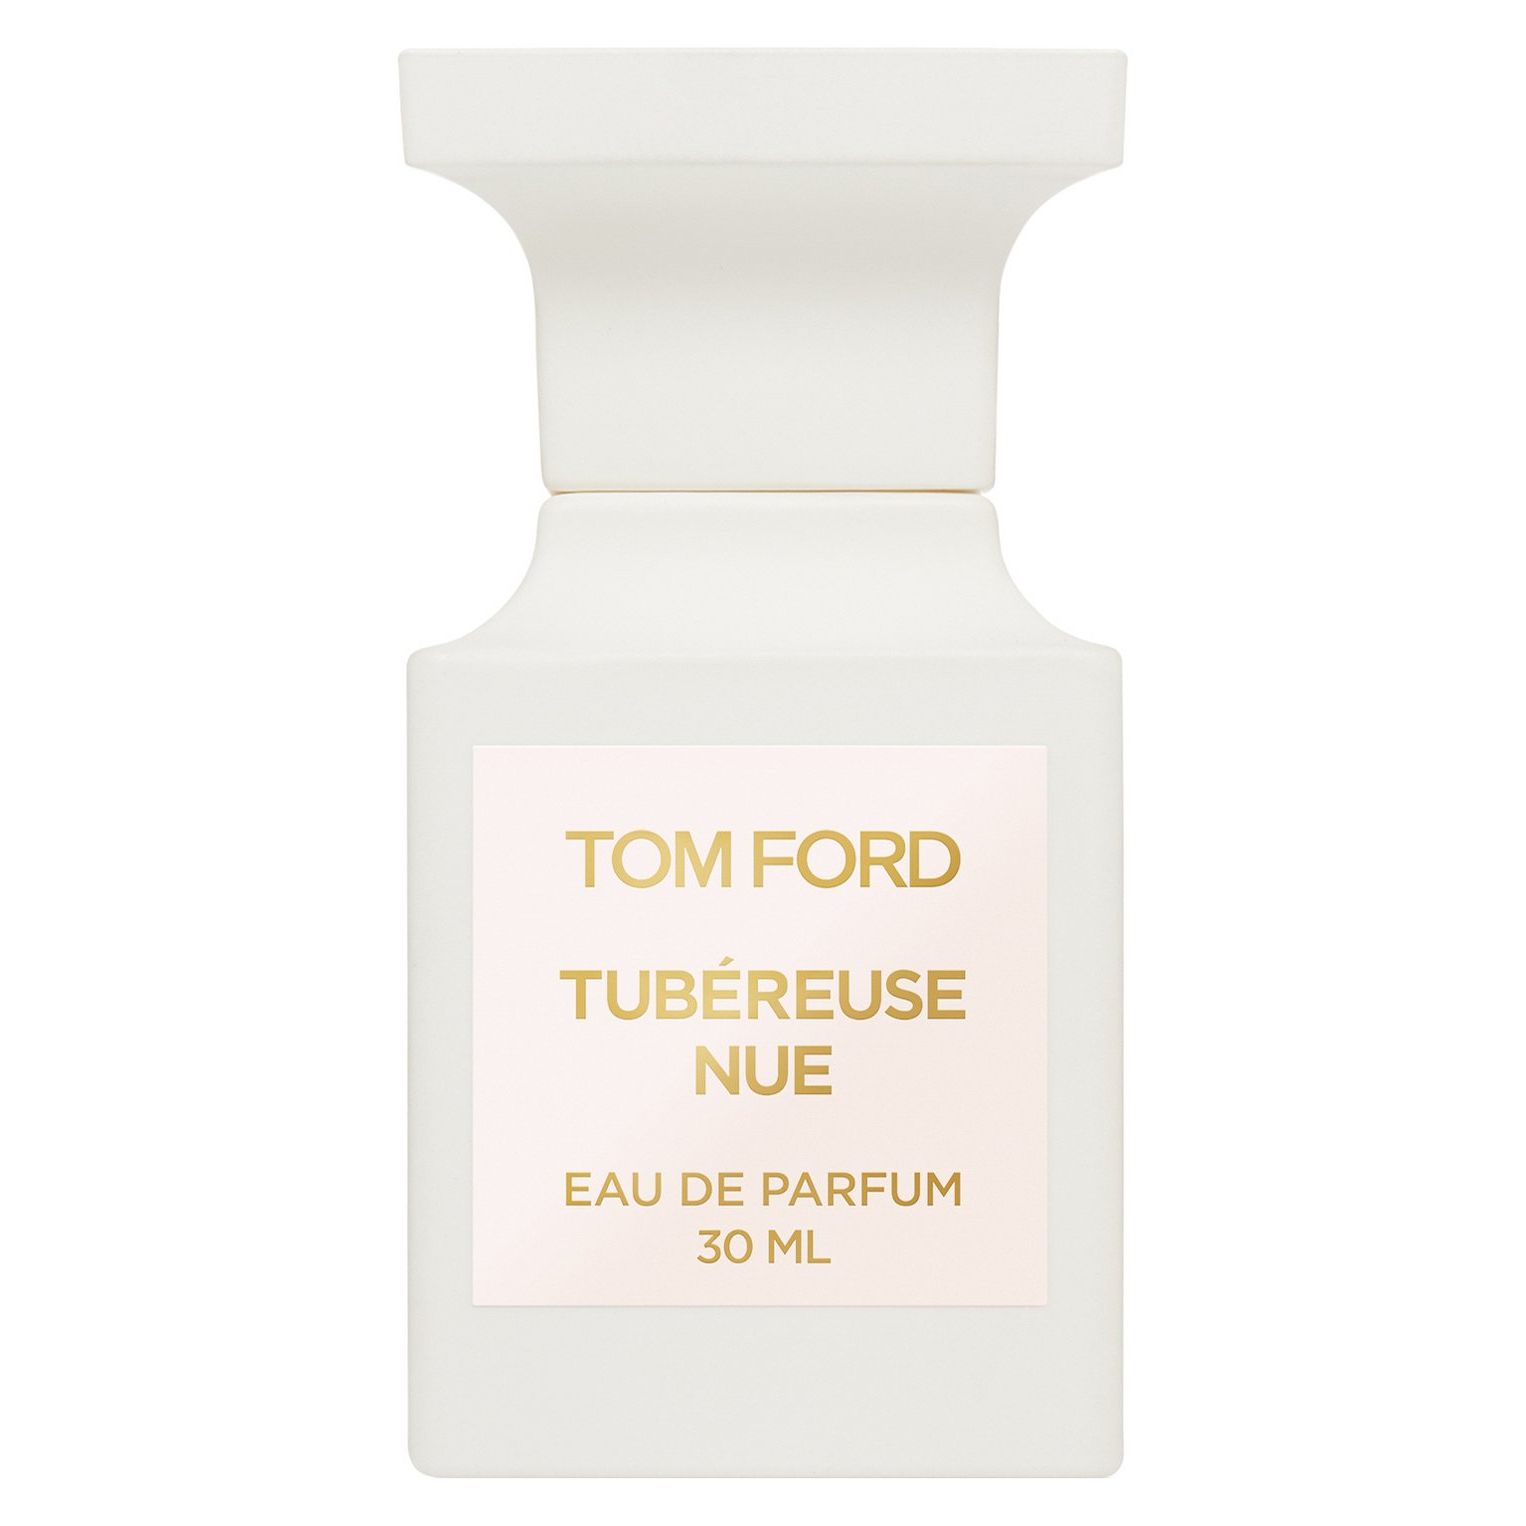 Вода парфюмерная Tom Ford Tubereuse Nue, унисекс, 30 мл